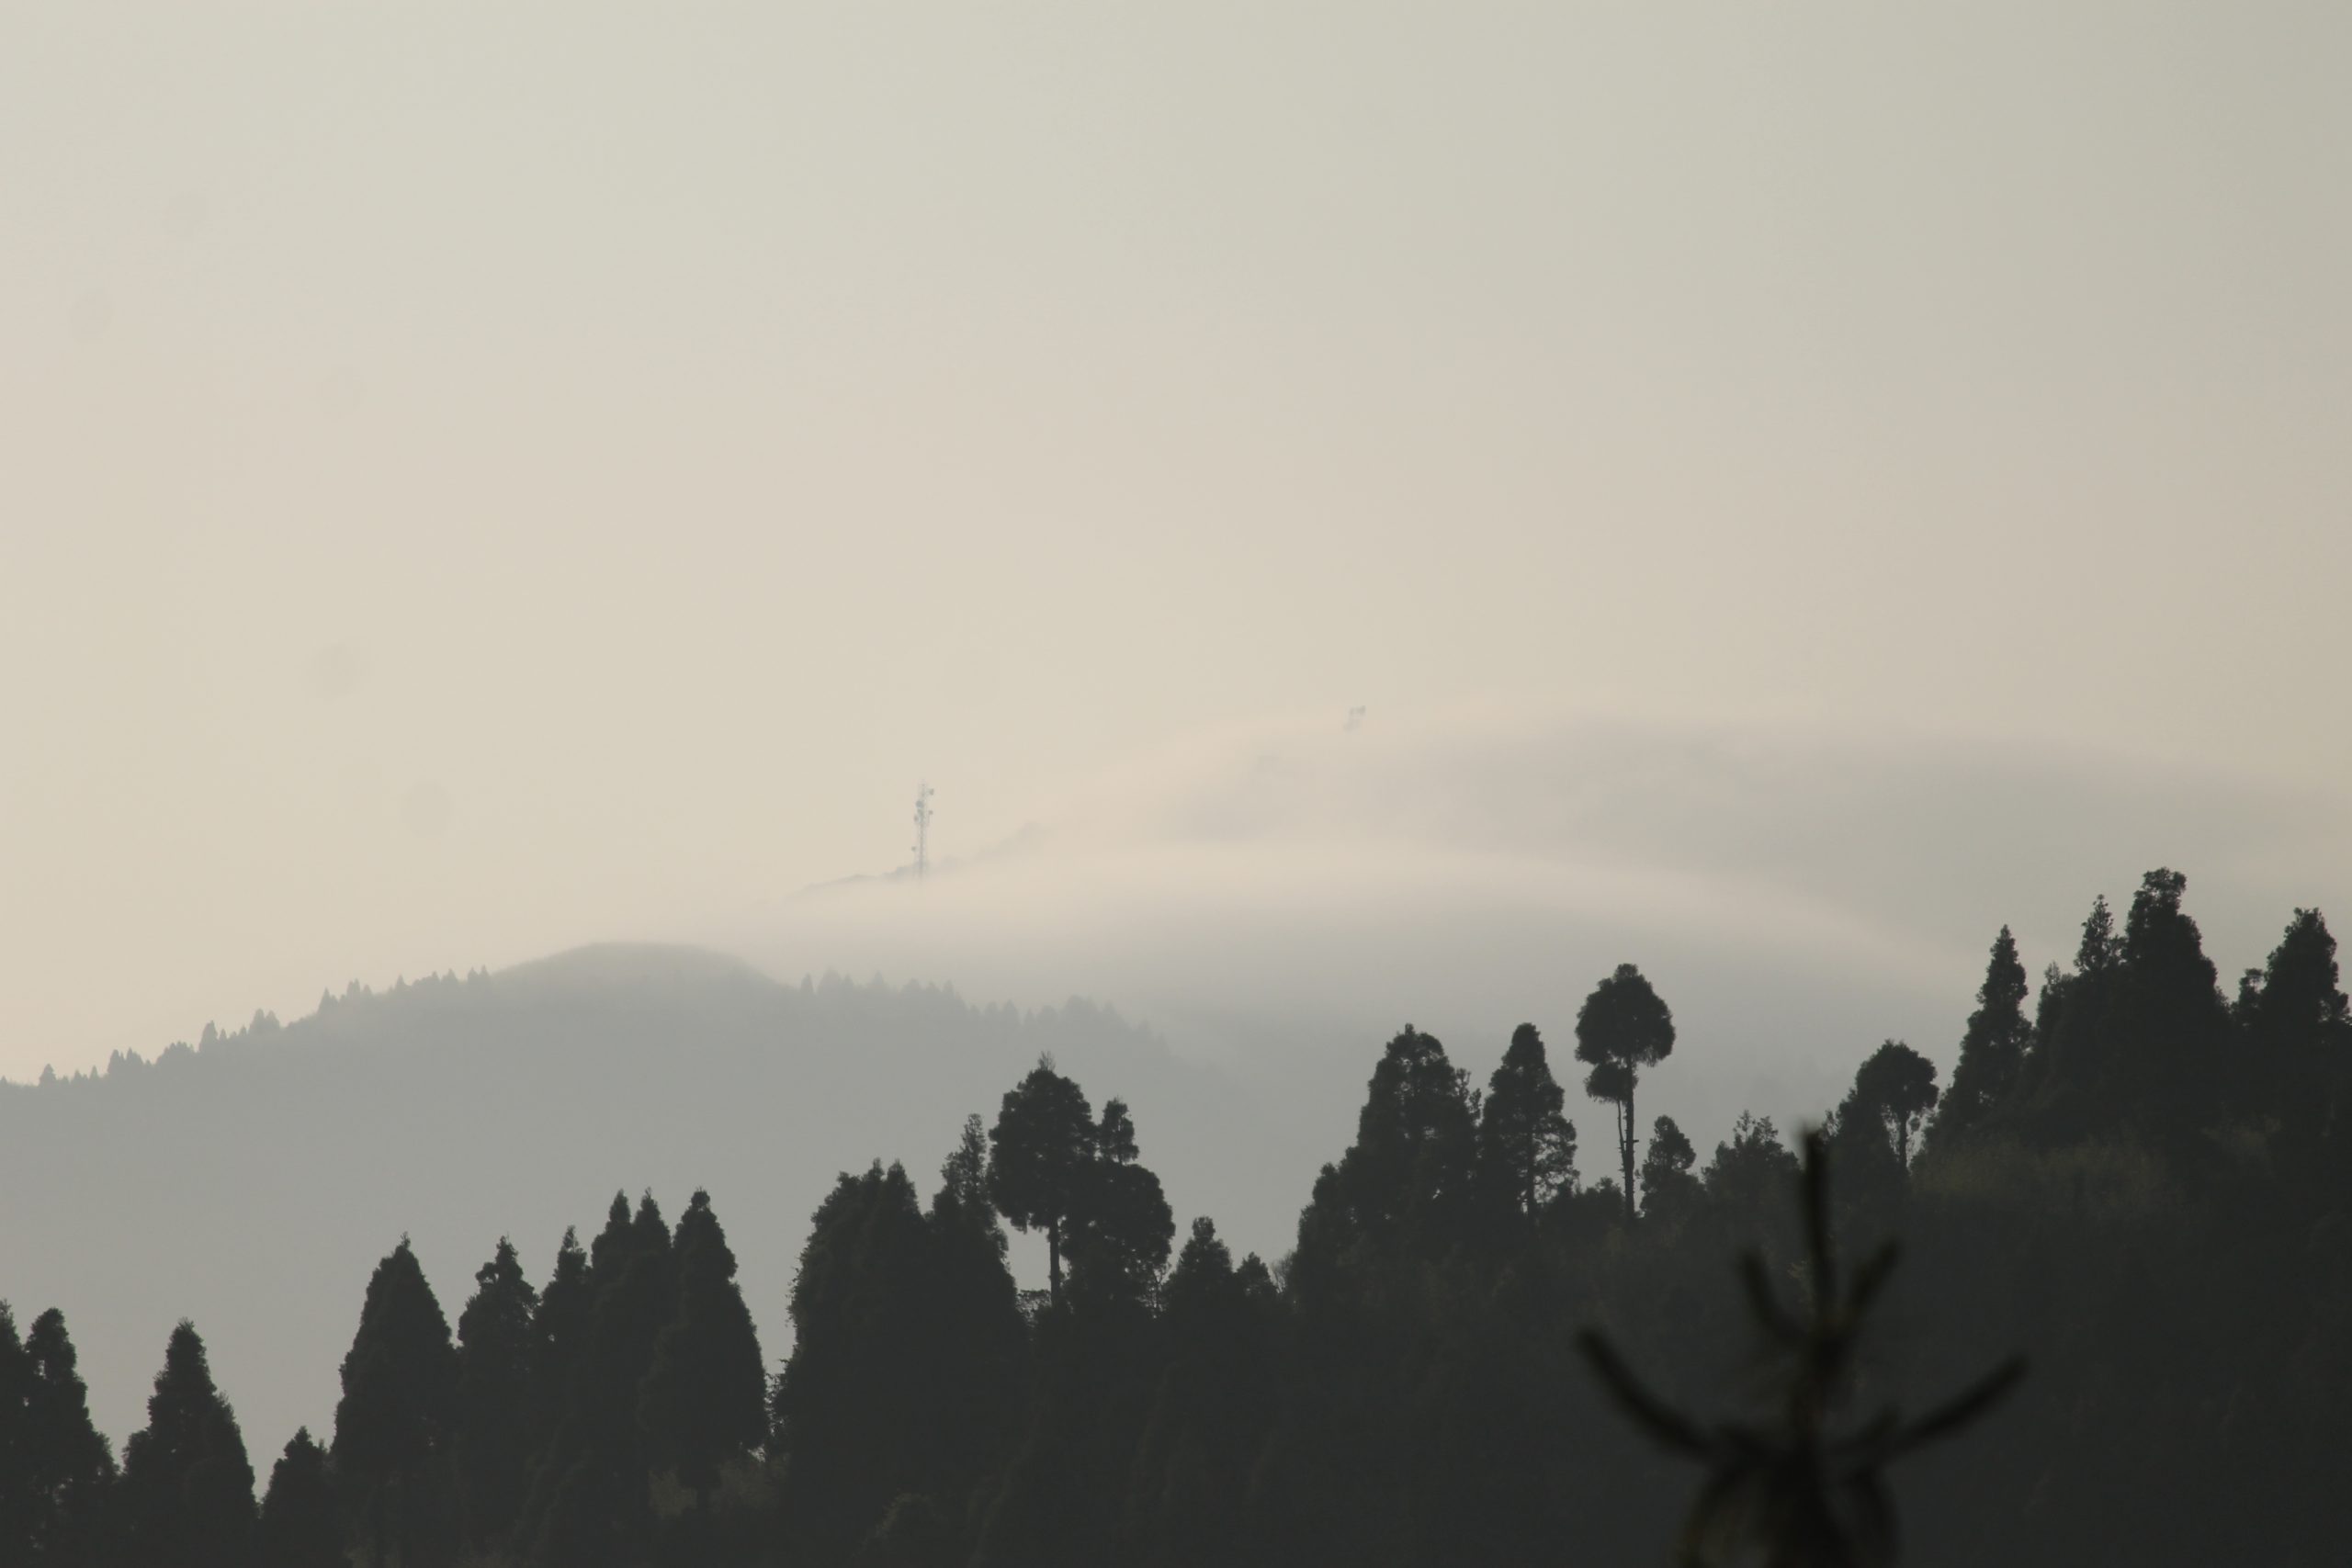 Fog on mountains